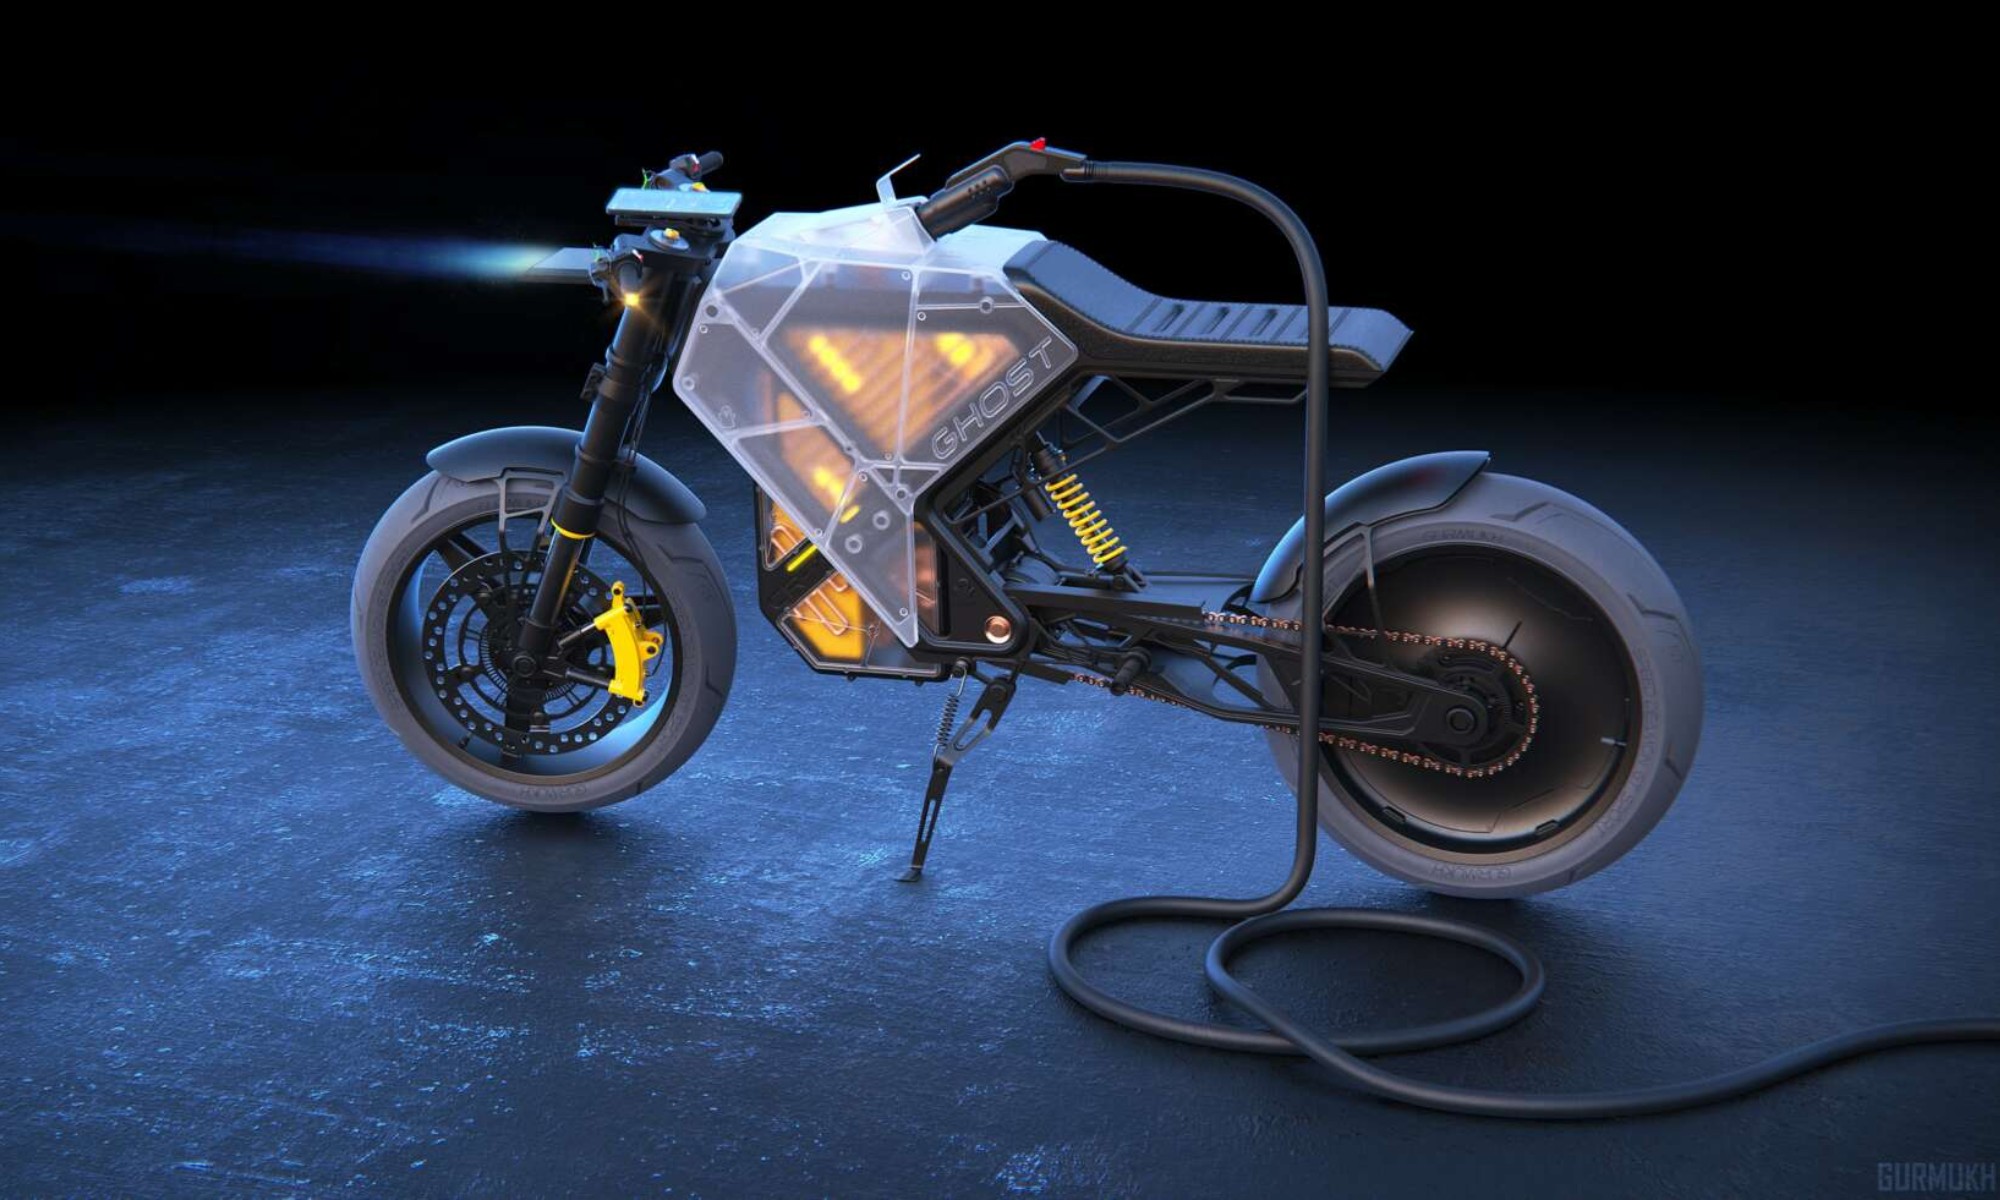 Este prototipo de moto eléctrica destaca por su diseño y tecnología centrada en la sostenibilidad.